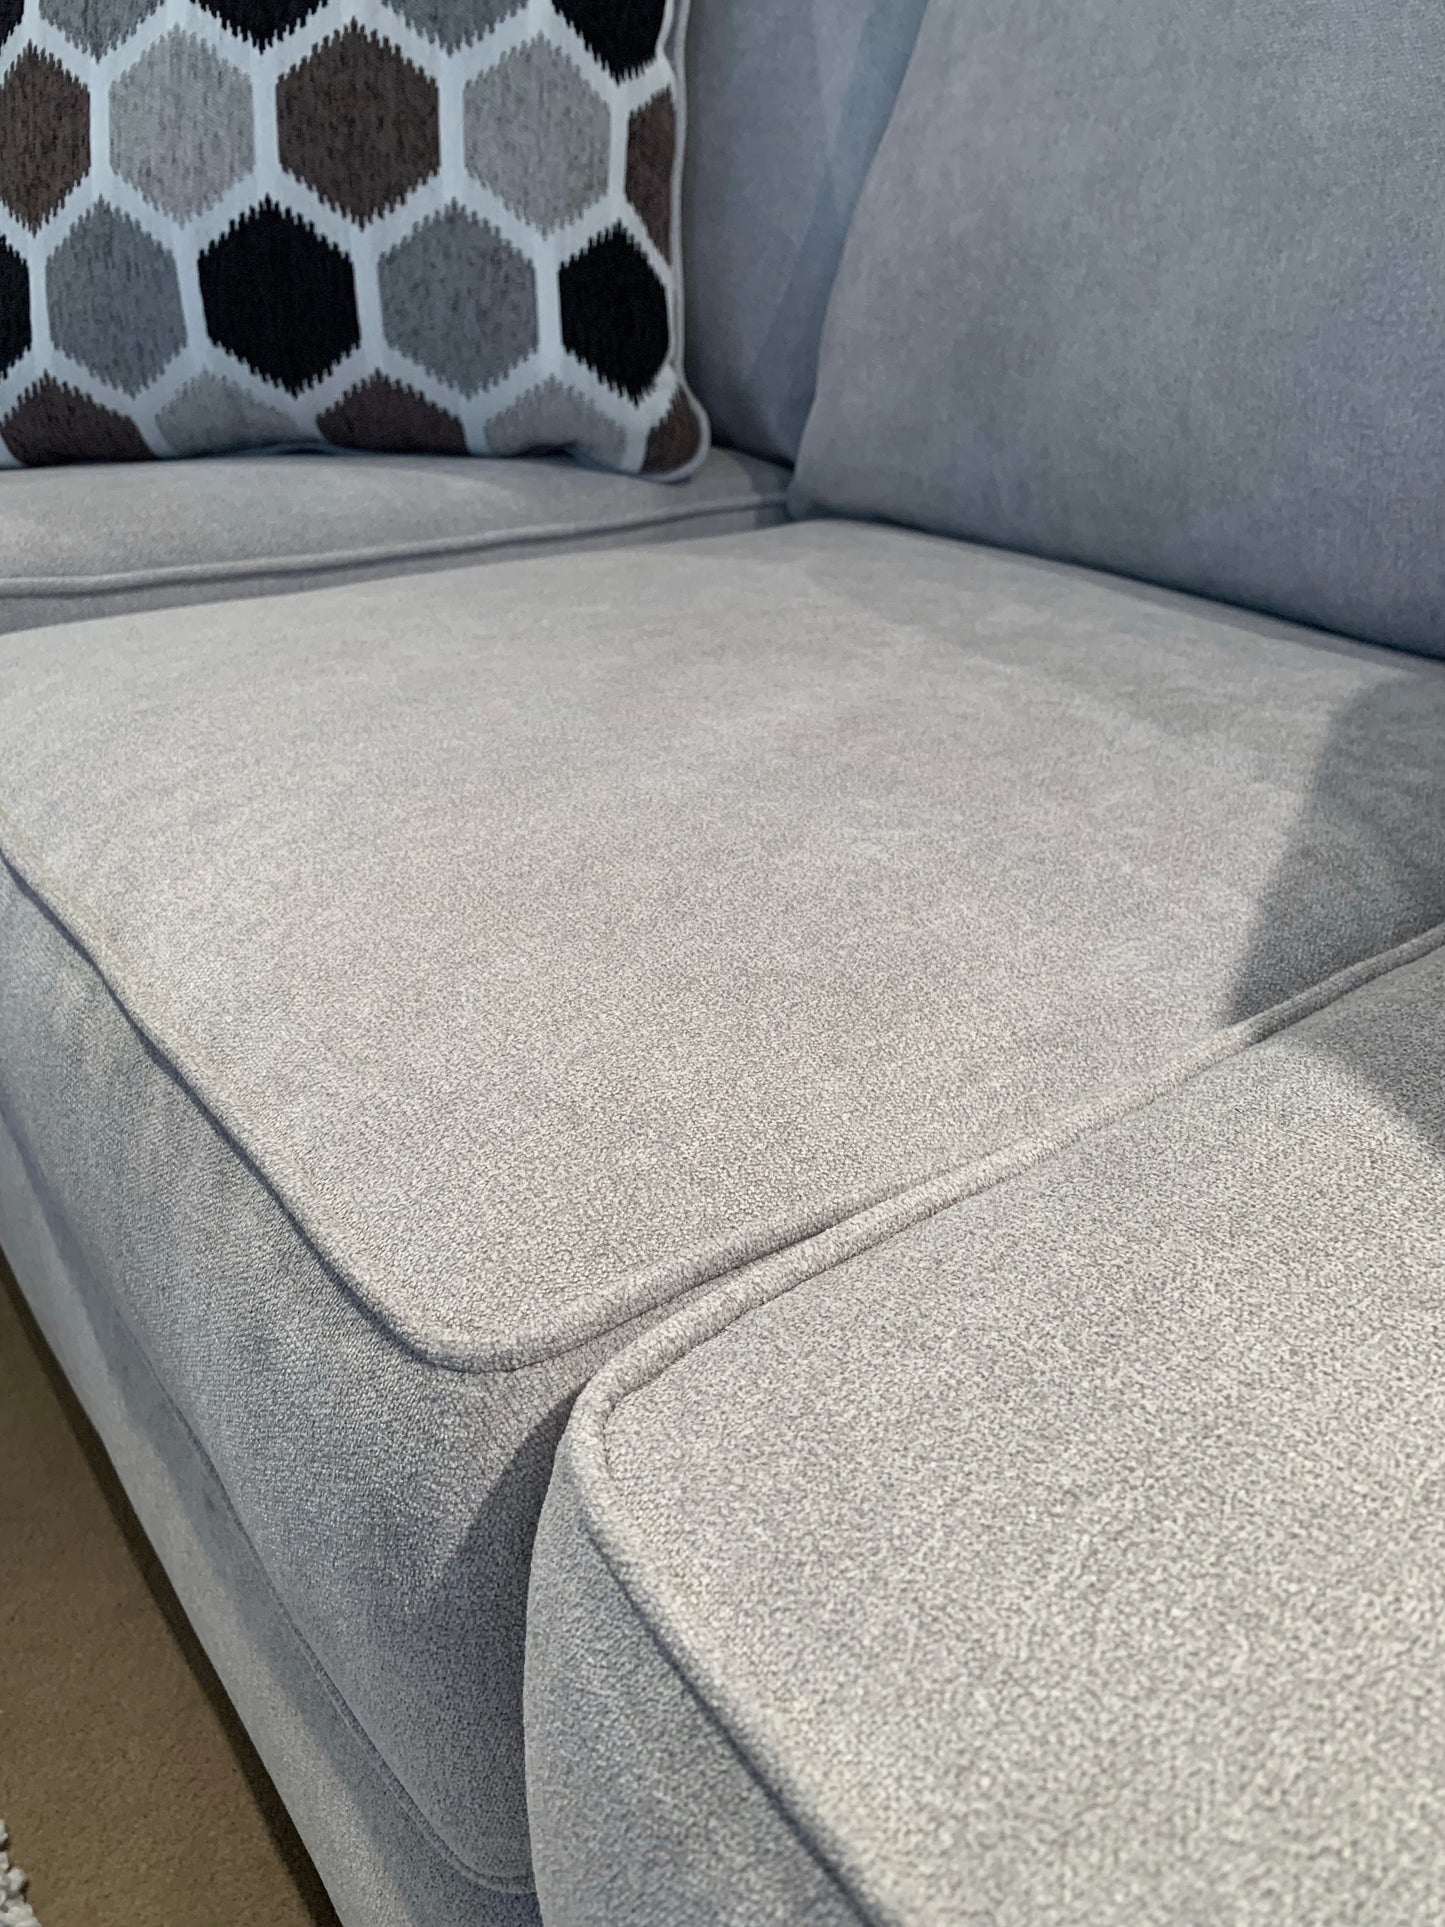 Camero Fabric Pillowback Sofa, Silver